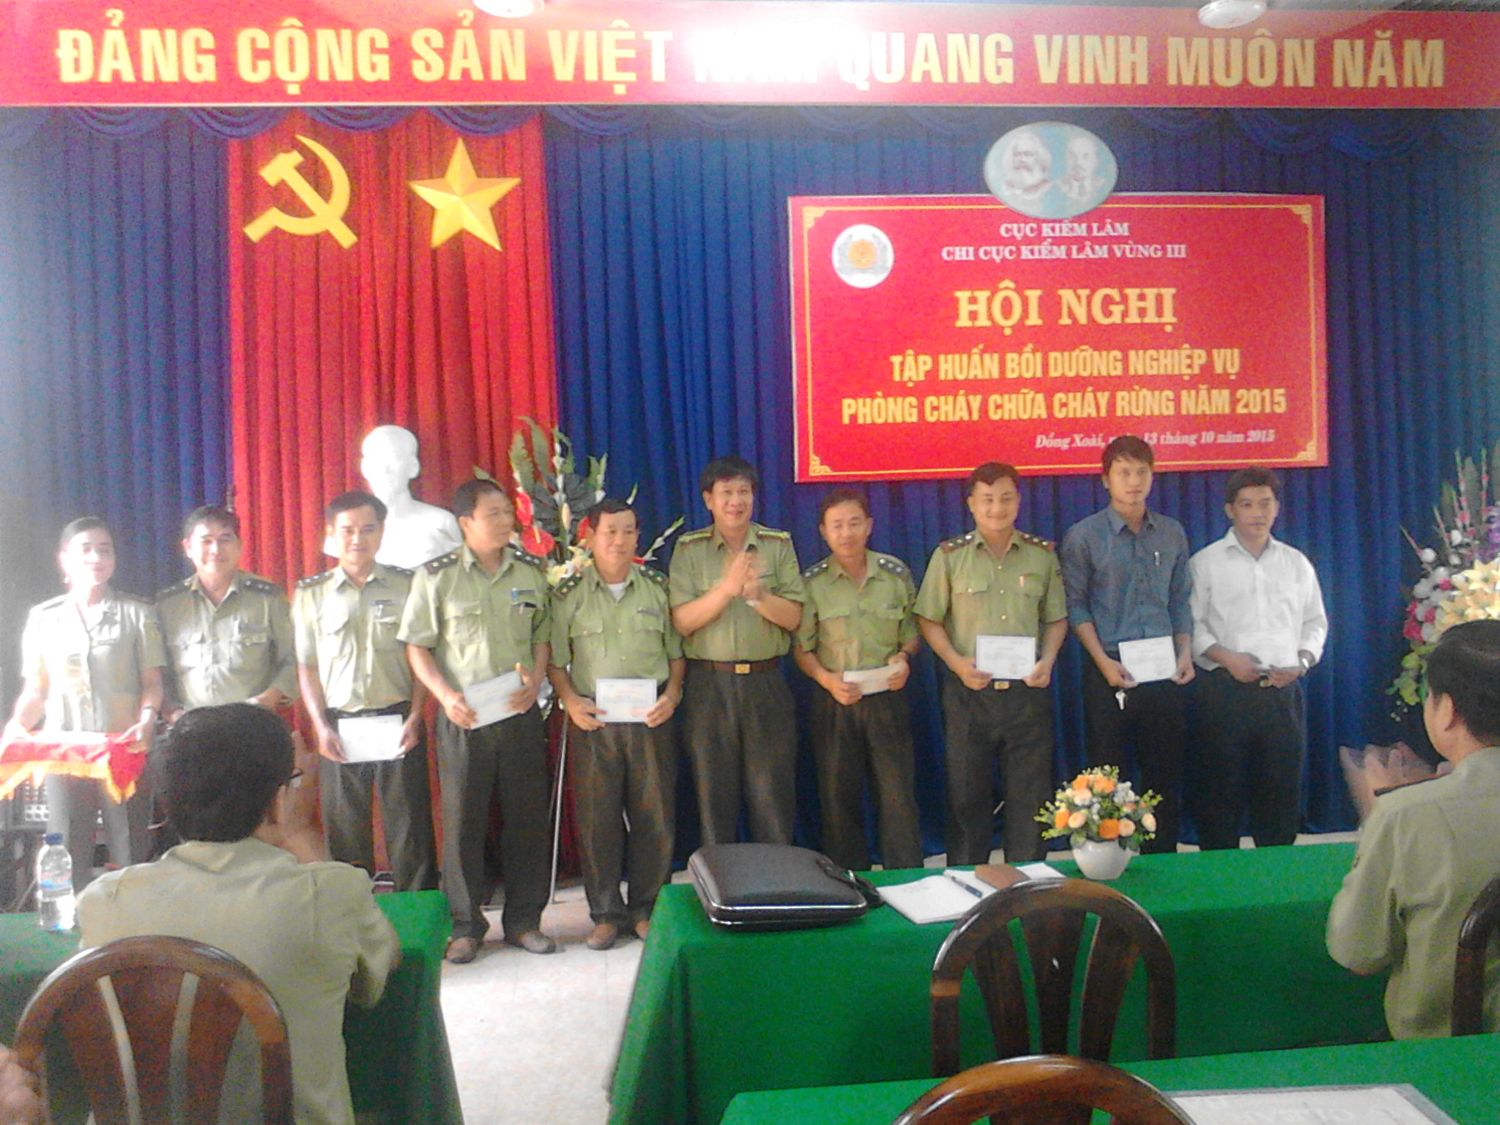 Ông Dương Văn Lâm – CCT.Chi cục Kiểm lâm Vùng III trao giấy chứng nhận cho các học viên